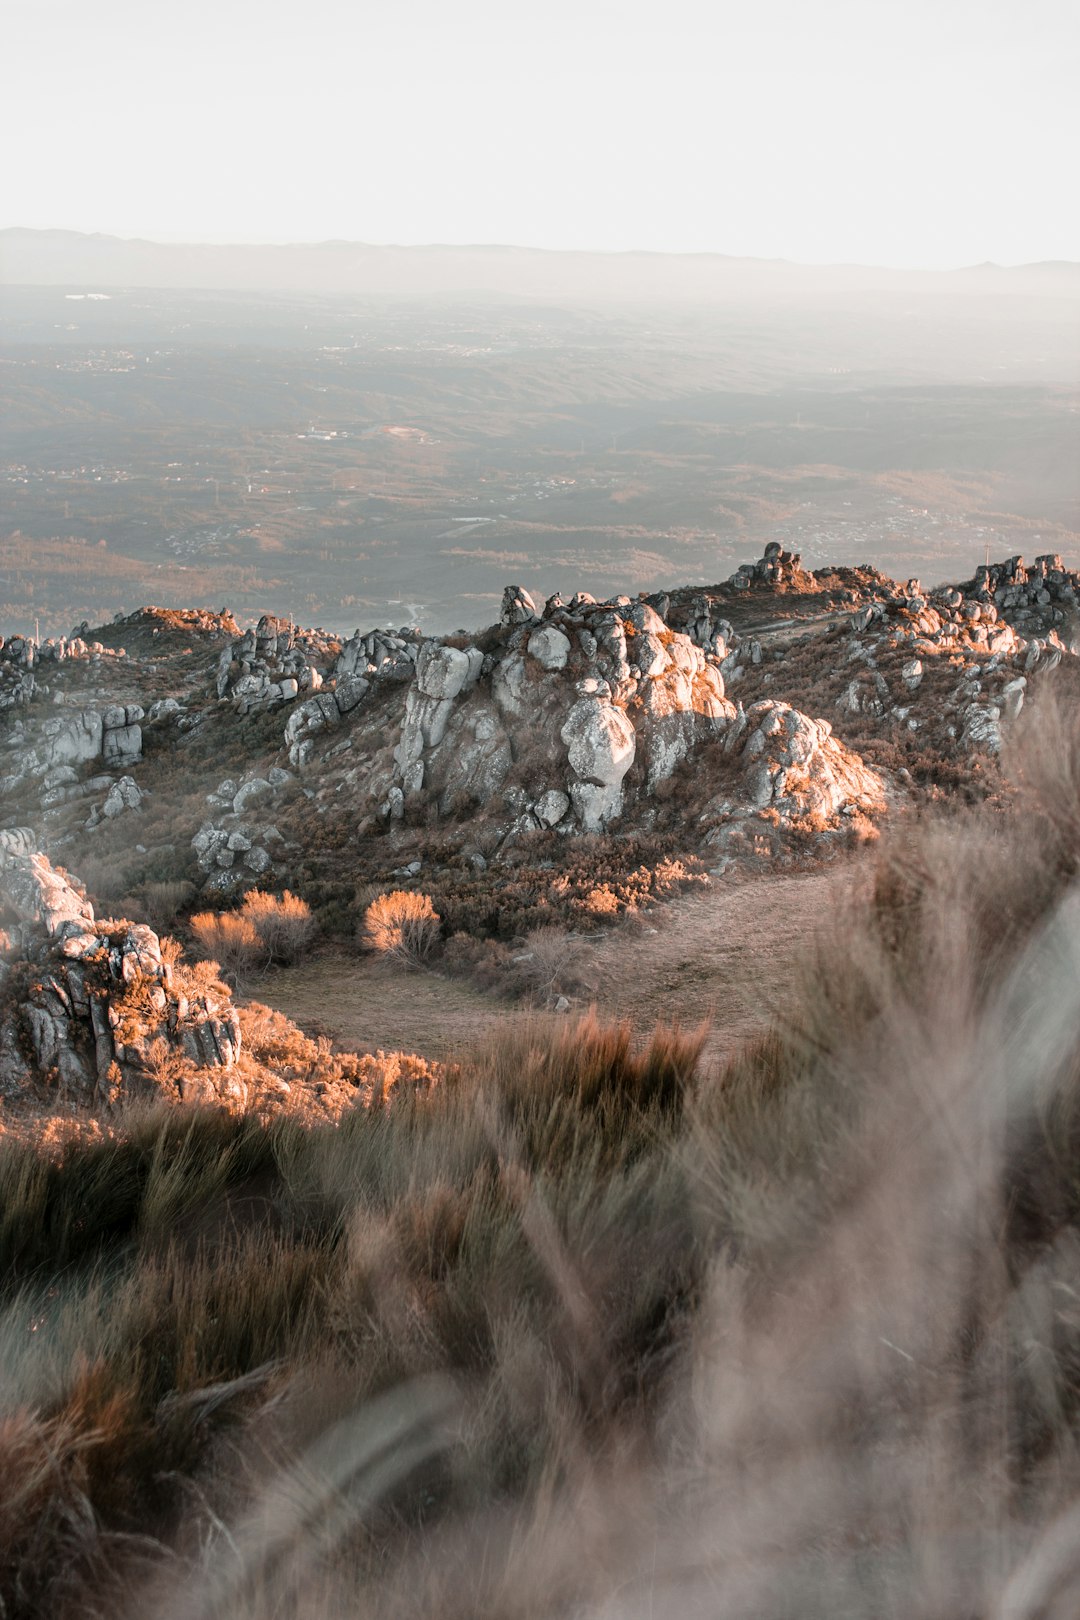 Hill photo spot Caramulo Parc naturel de la Serra da Estrela